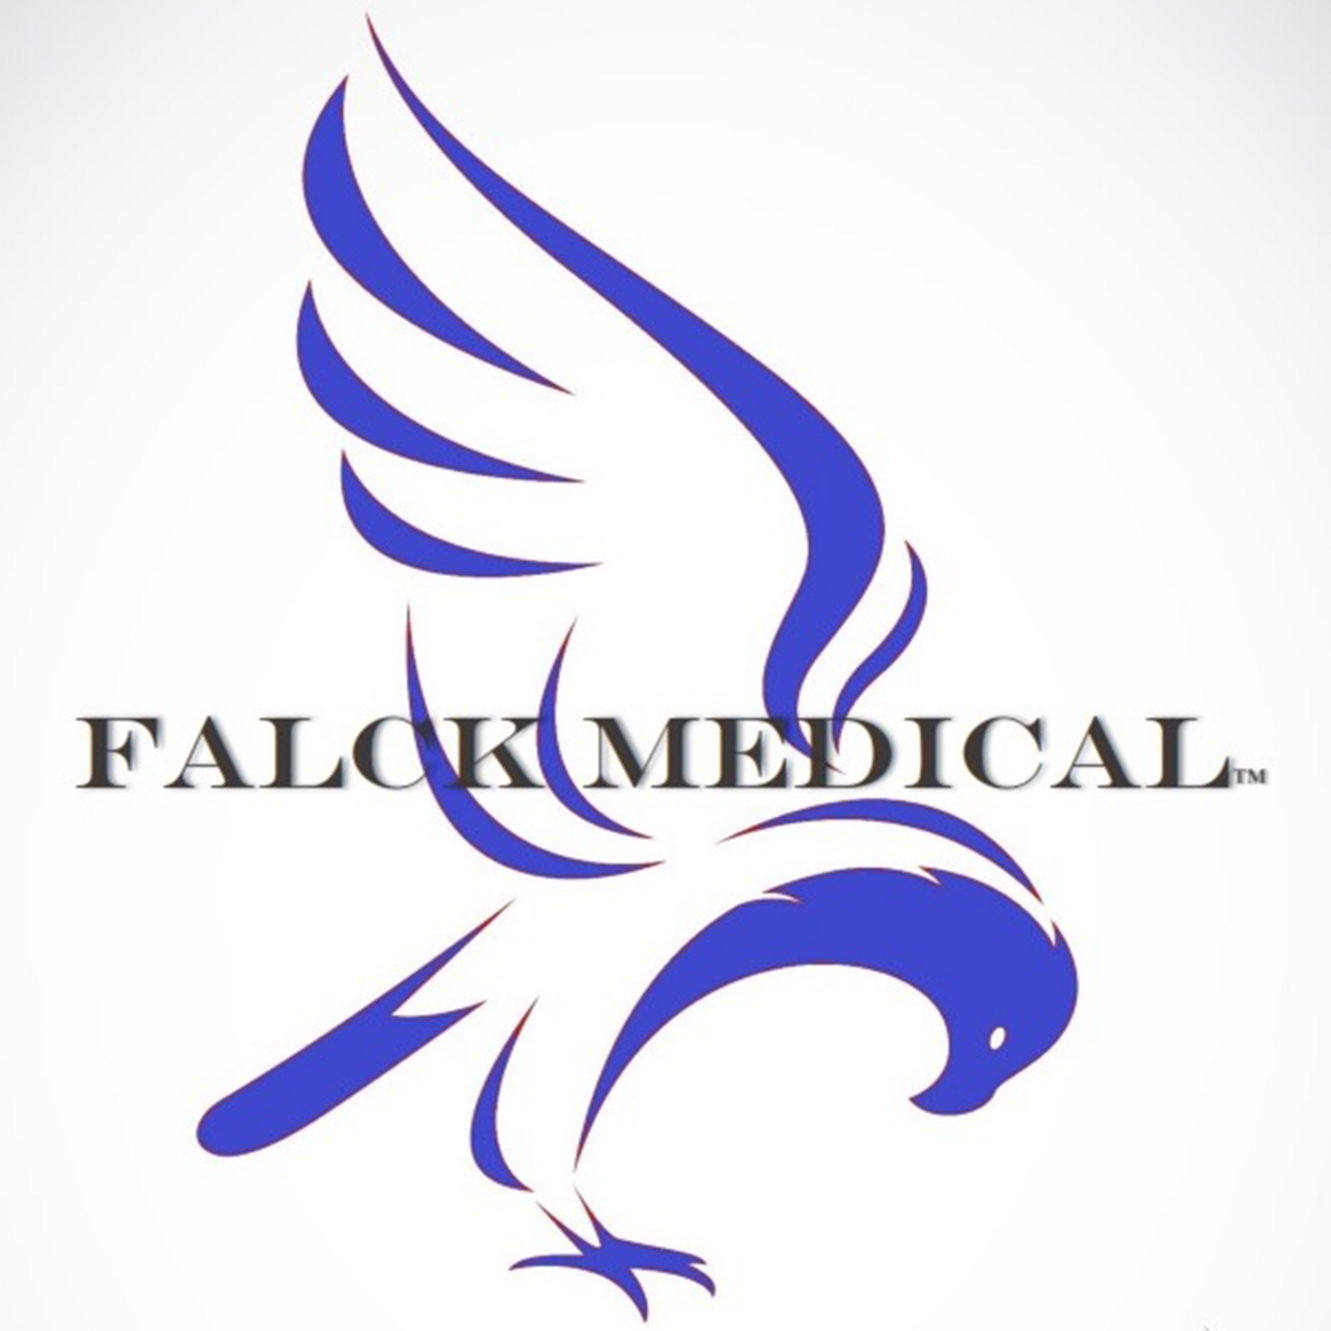 Falck Medical